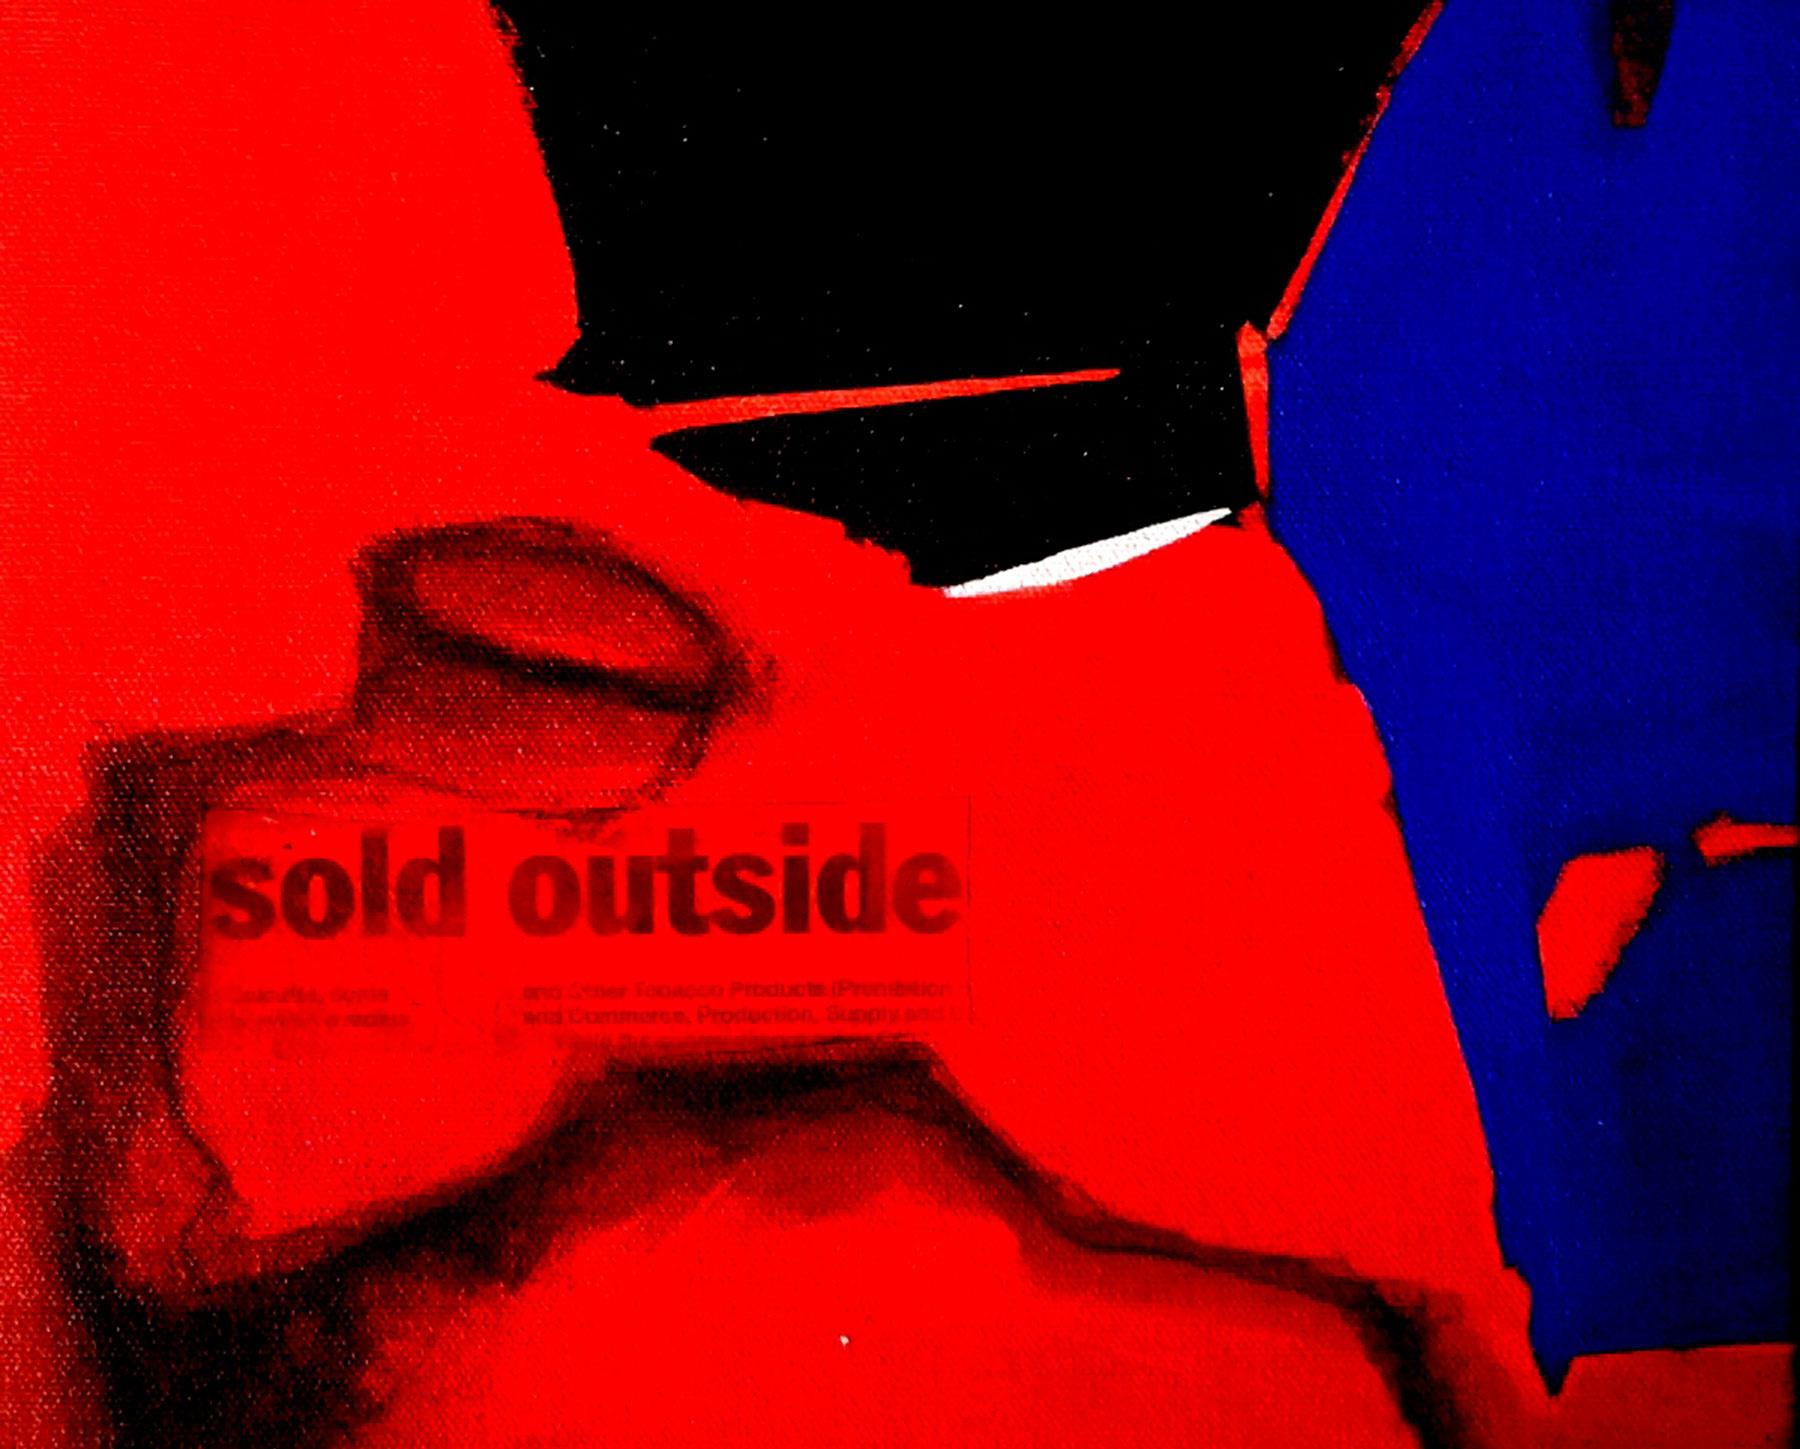 Vendu à l'extérieur, abstrait, technique mixte sur toile, rouge, noir, bleu « en stock » - Contemporain Painting par Rathin Kanji